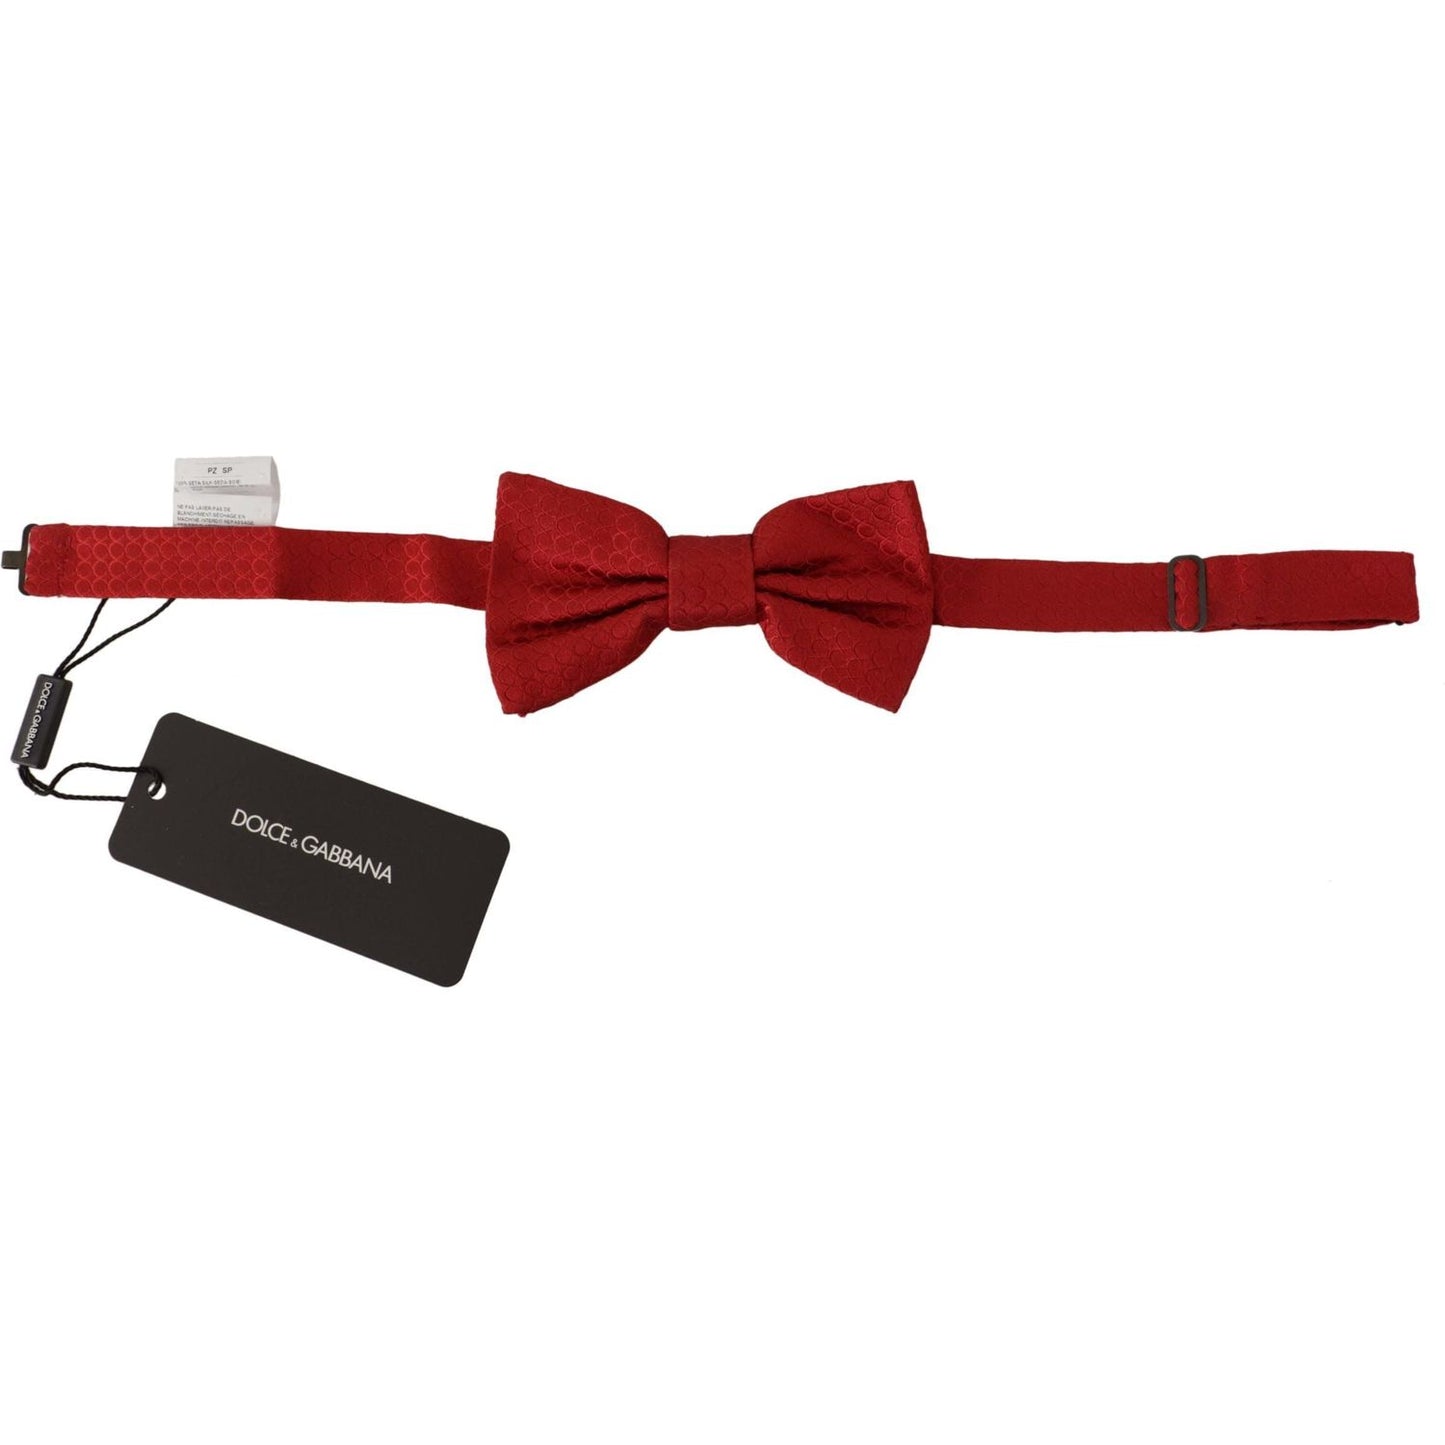 Dolce & Gabbana Elegant Red Silk Tied Bow Tie elegant-red-silk-tied-bow-tie IMG_7627-scaled-3b41385b-ddc.jpg